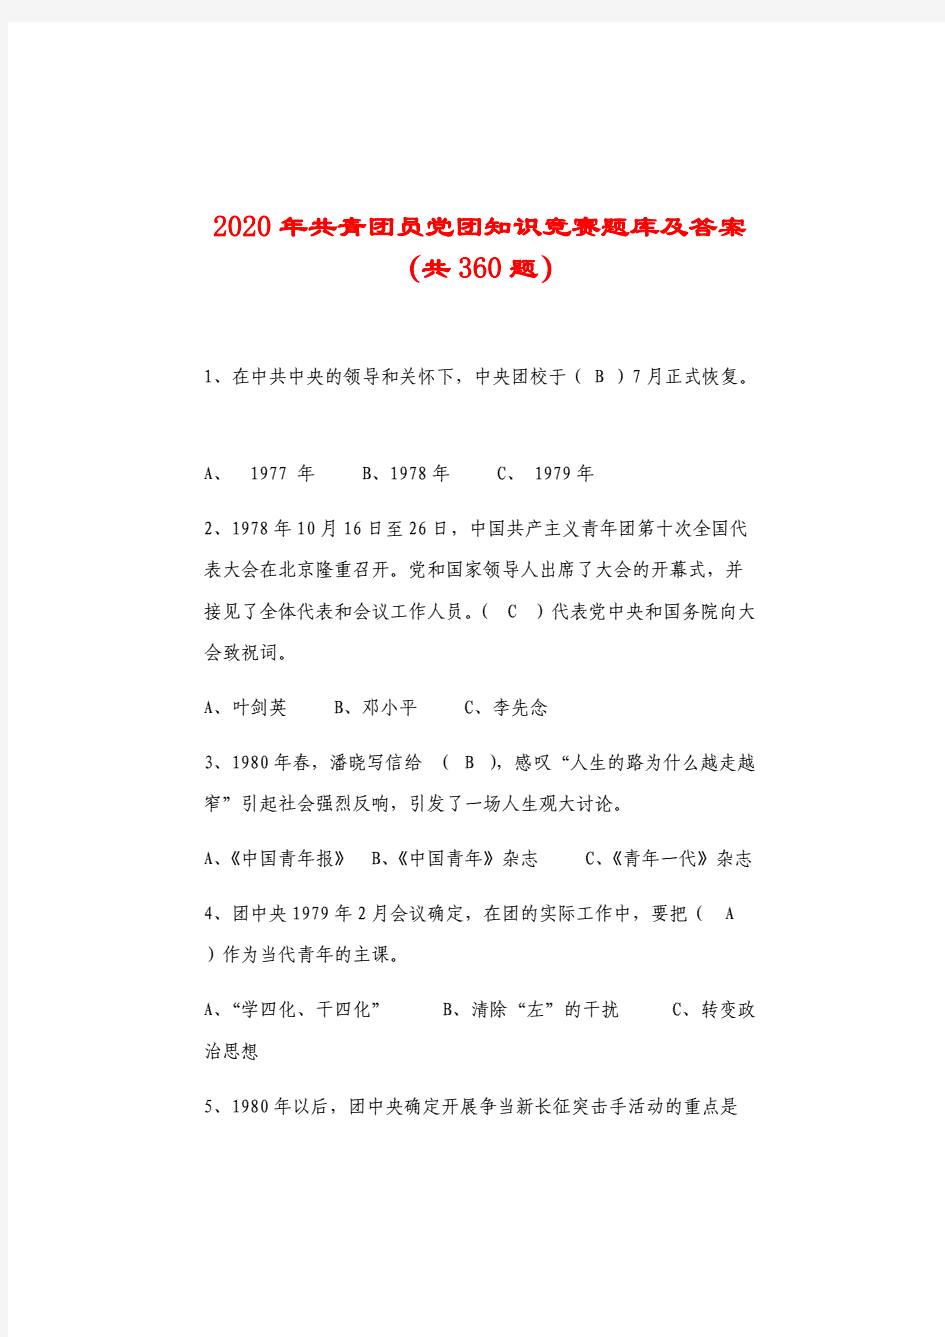 2020年共青团员党团知识竞赛题库及答案(共360题).pdf